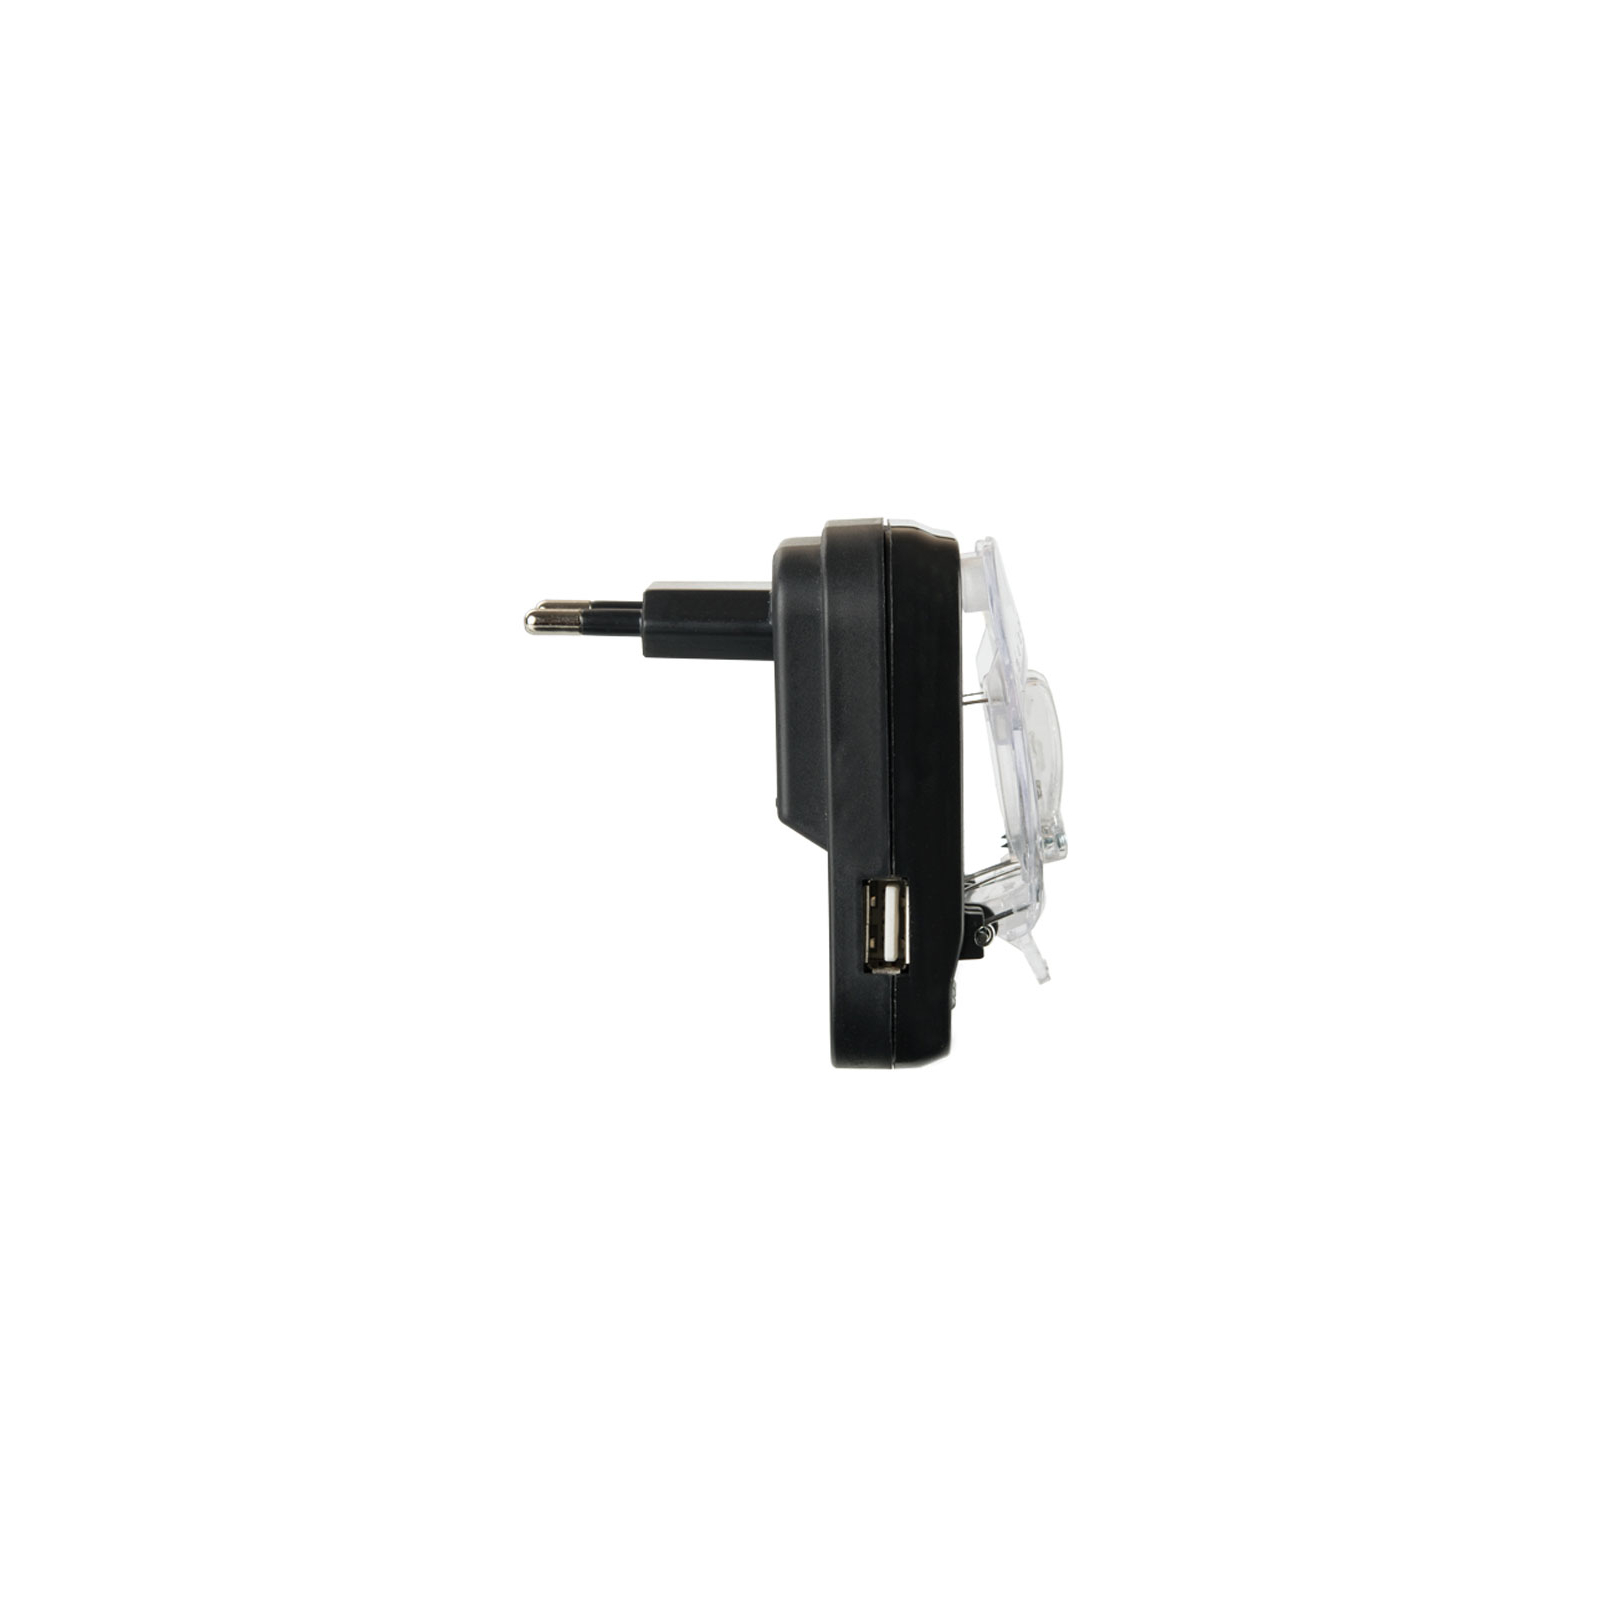 Зарядний пристрій Mobiking для заряда Li-Ion аккумуляторов Economic with USB (55204) зображення 3